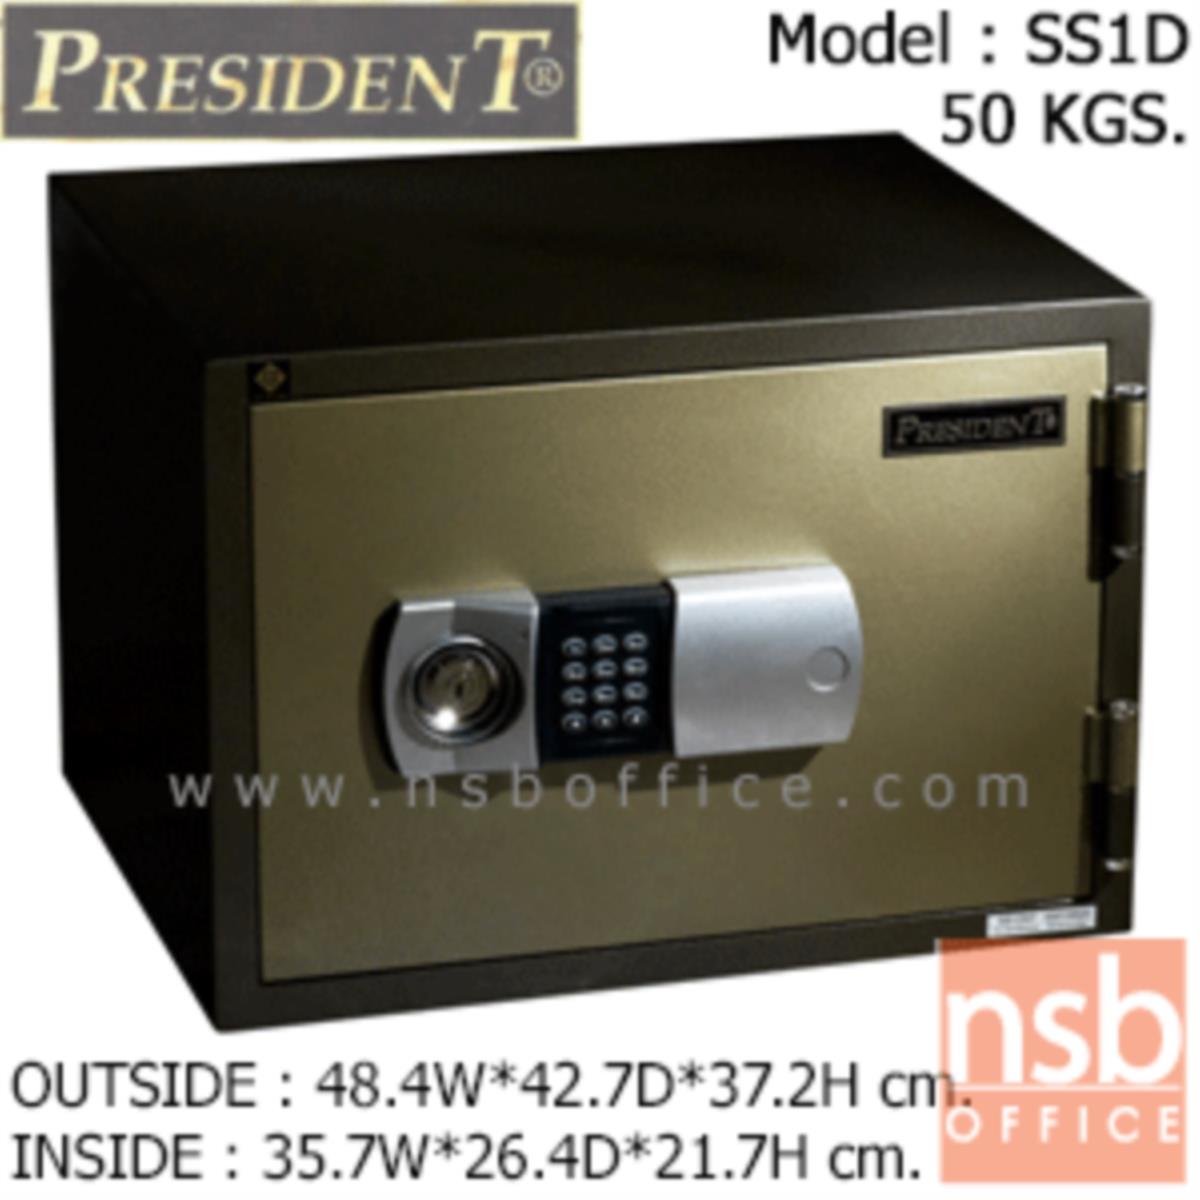 ตู้เซฟนิรภัยชนิดดิจิตอล 50 กก.  รุ่น PRESIDENT-SS1D มี 1 กุญแจ 1 รหัส (รหัสใช้กดหน้าตู้)